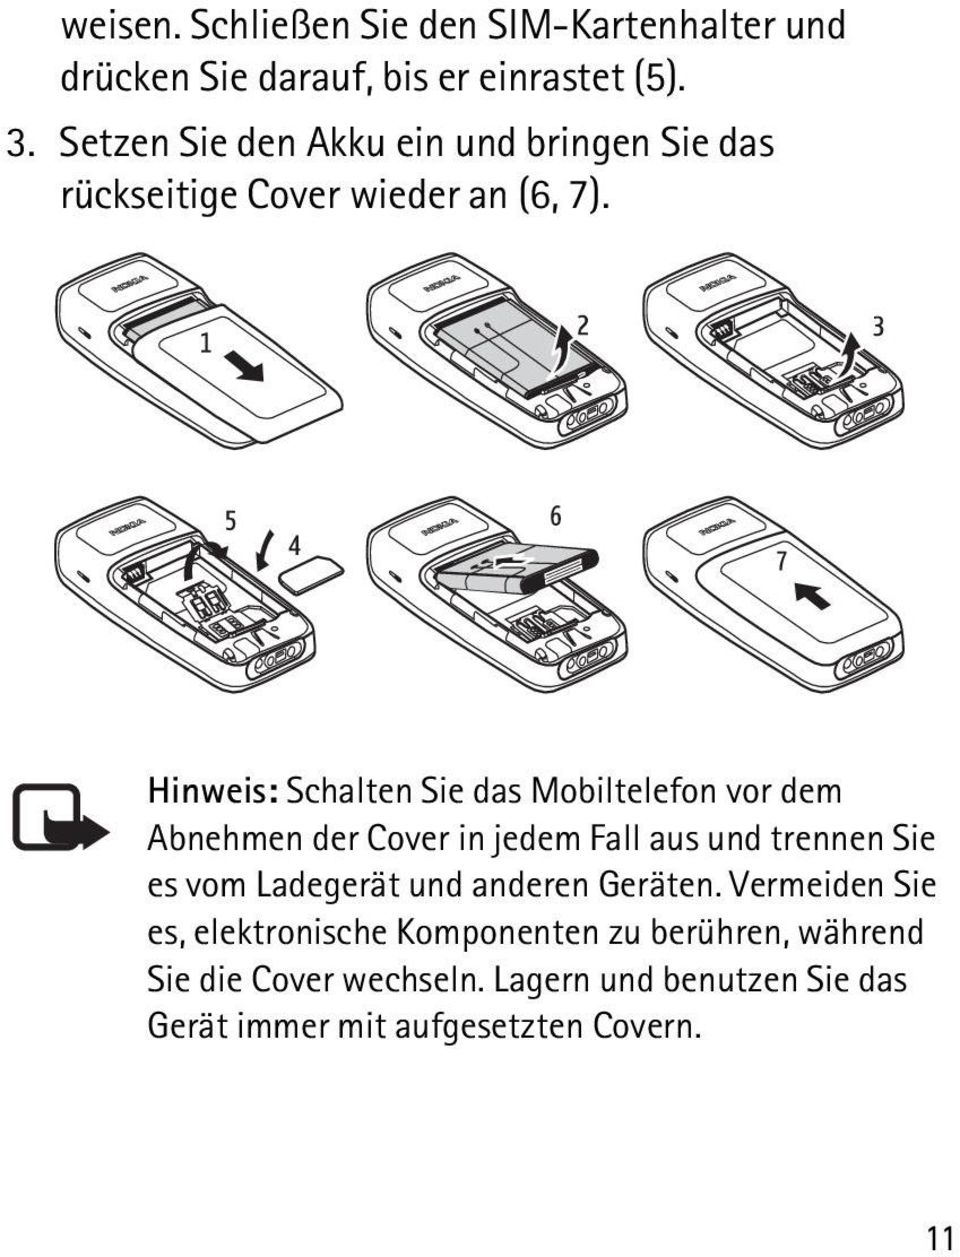 Hinweis: Schalten Sie das Mobiltelefon vor dem Abnehmen der Cover in jedem Fall aus und trennen Sie es vom Ladegerät